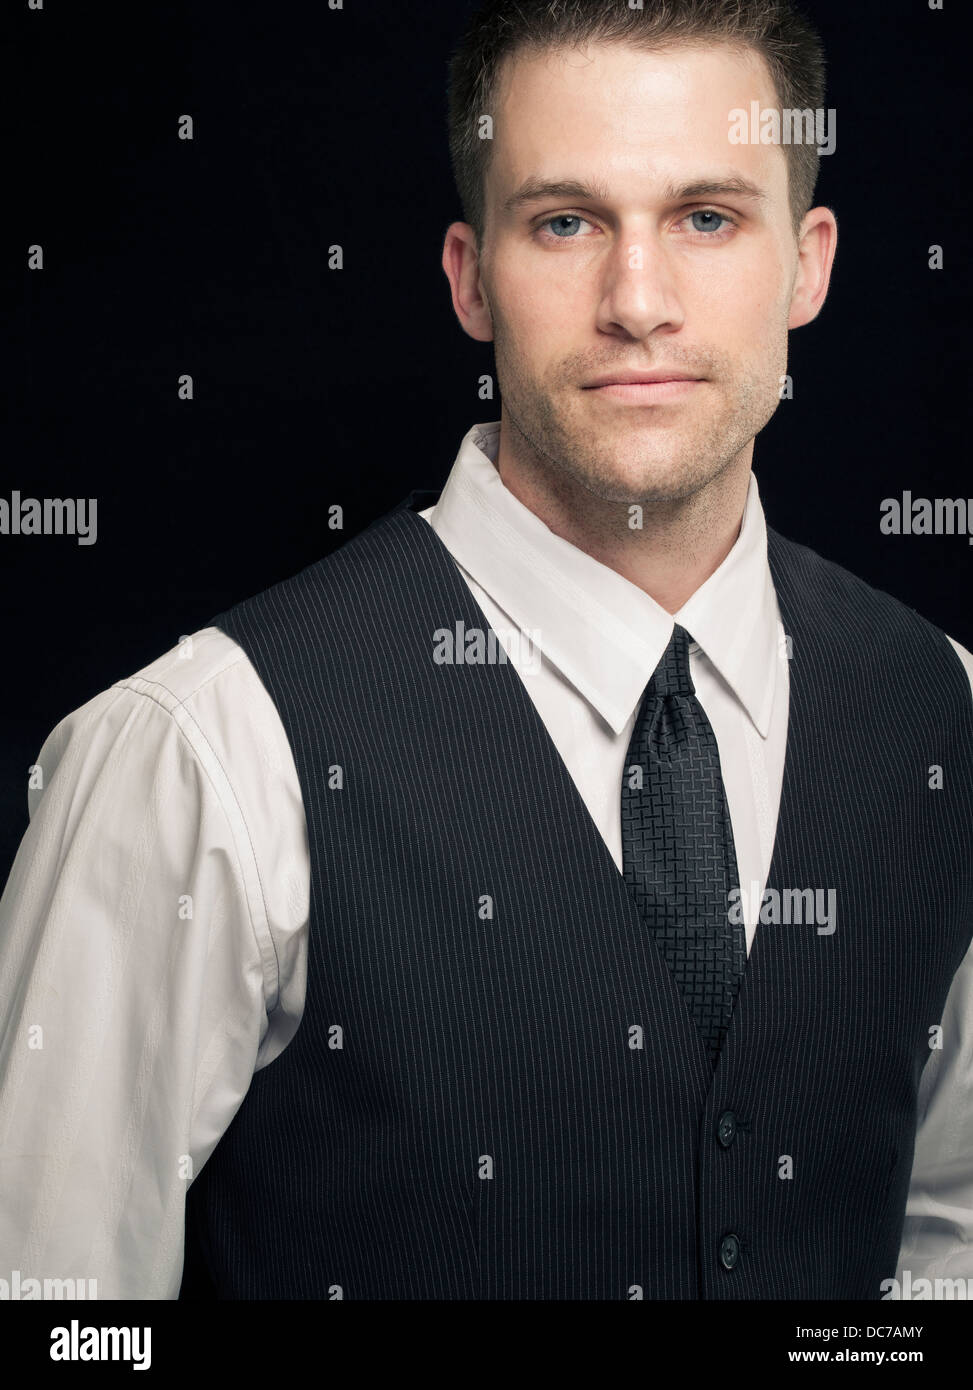 Jeune homme d'une chemise blanche, gilet et cravate Photo Stock - Alamy